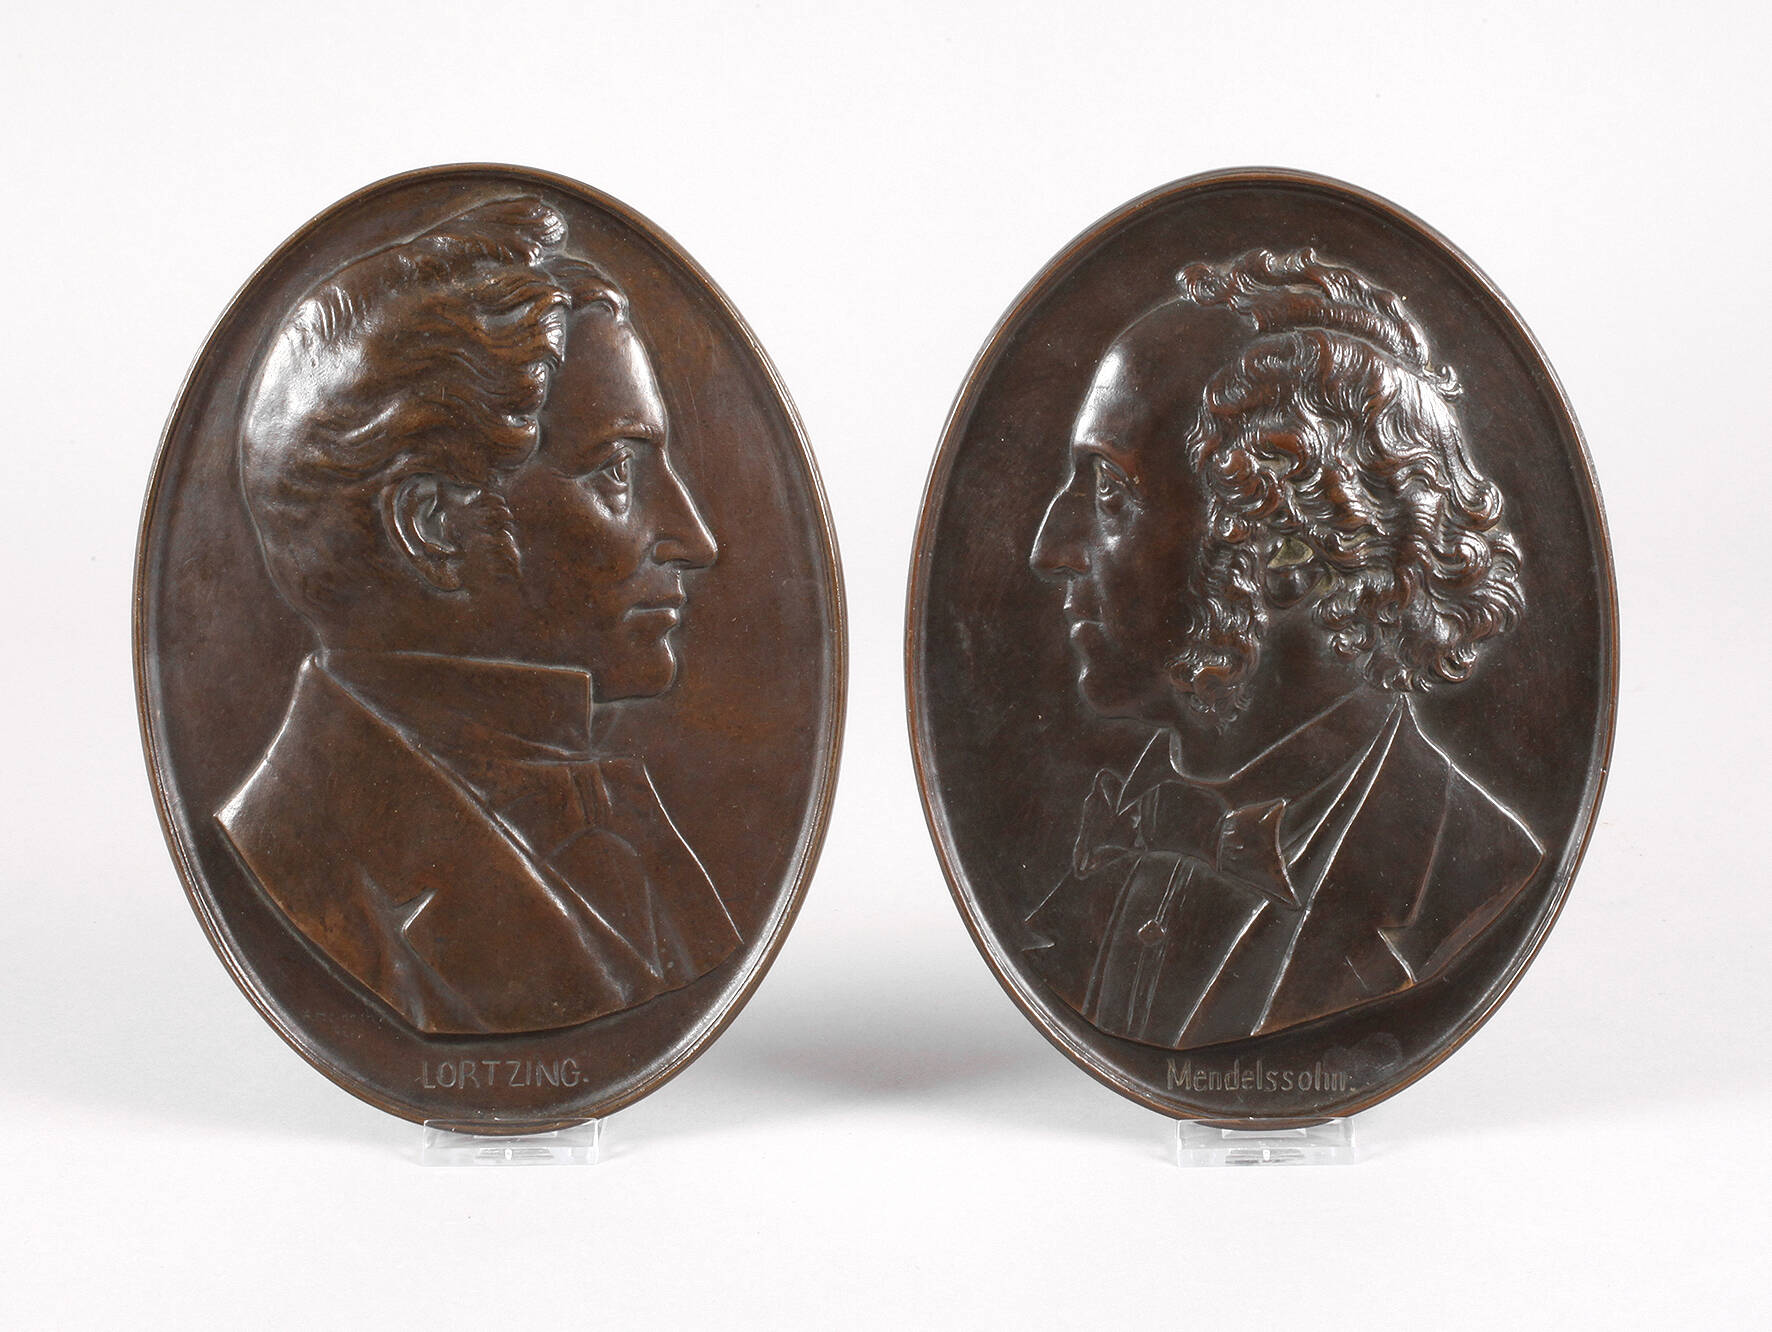 Bronzeplaketten Lortzing und Mendelssohn